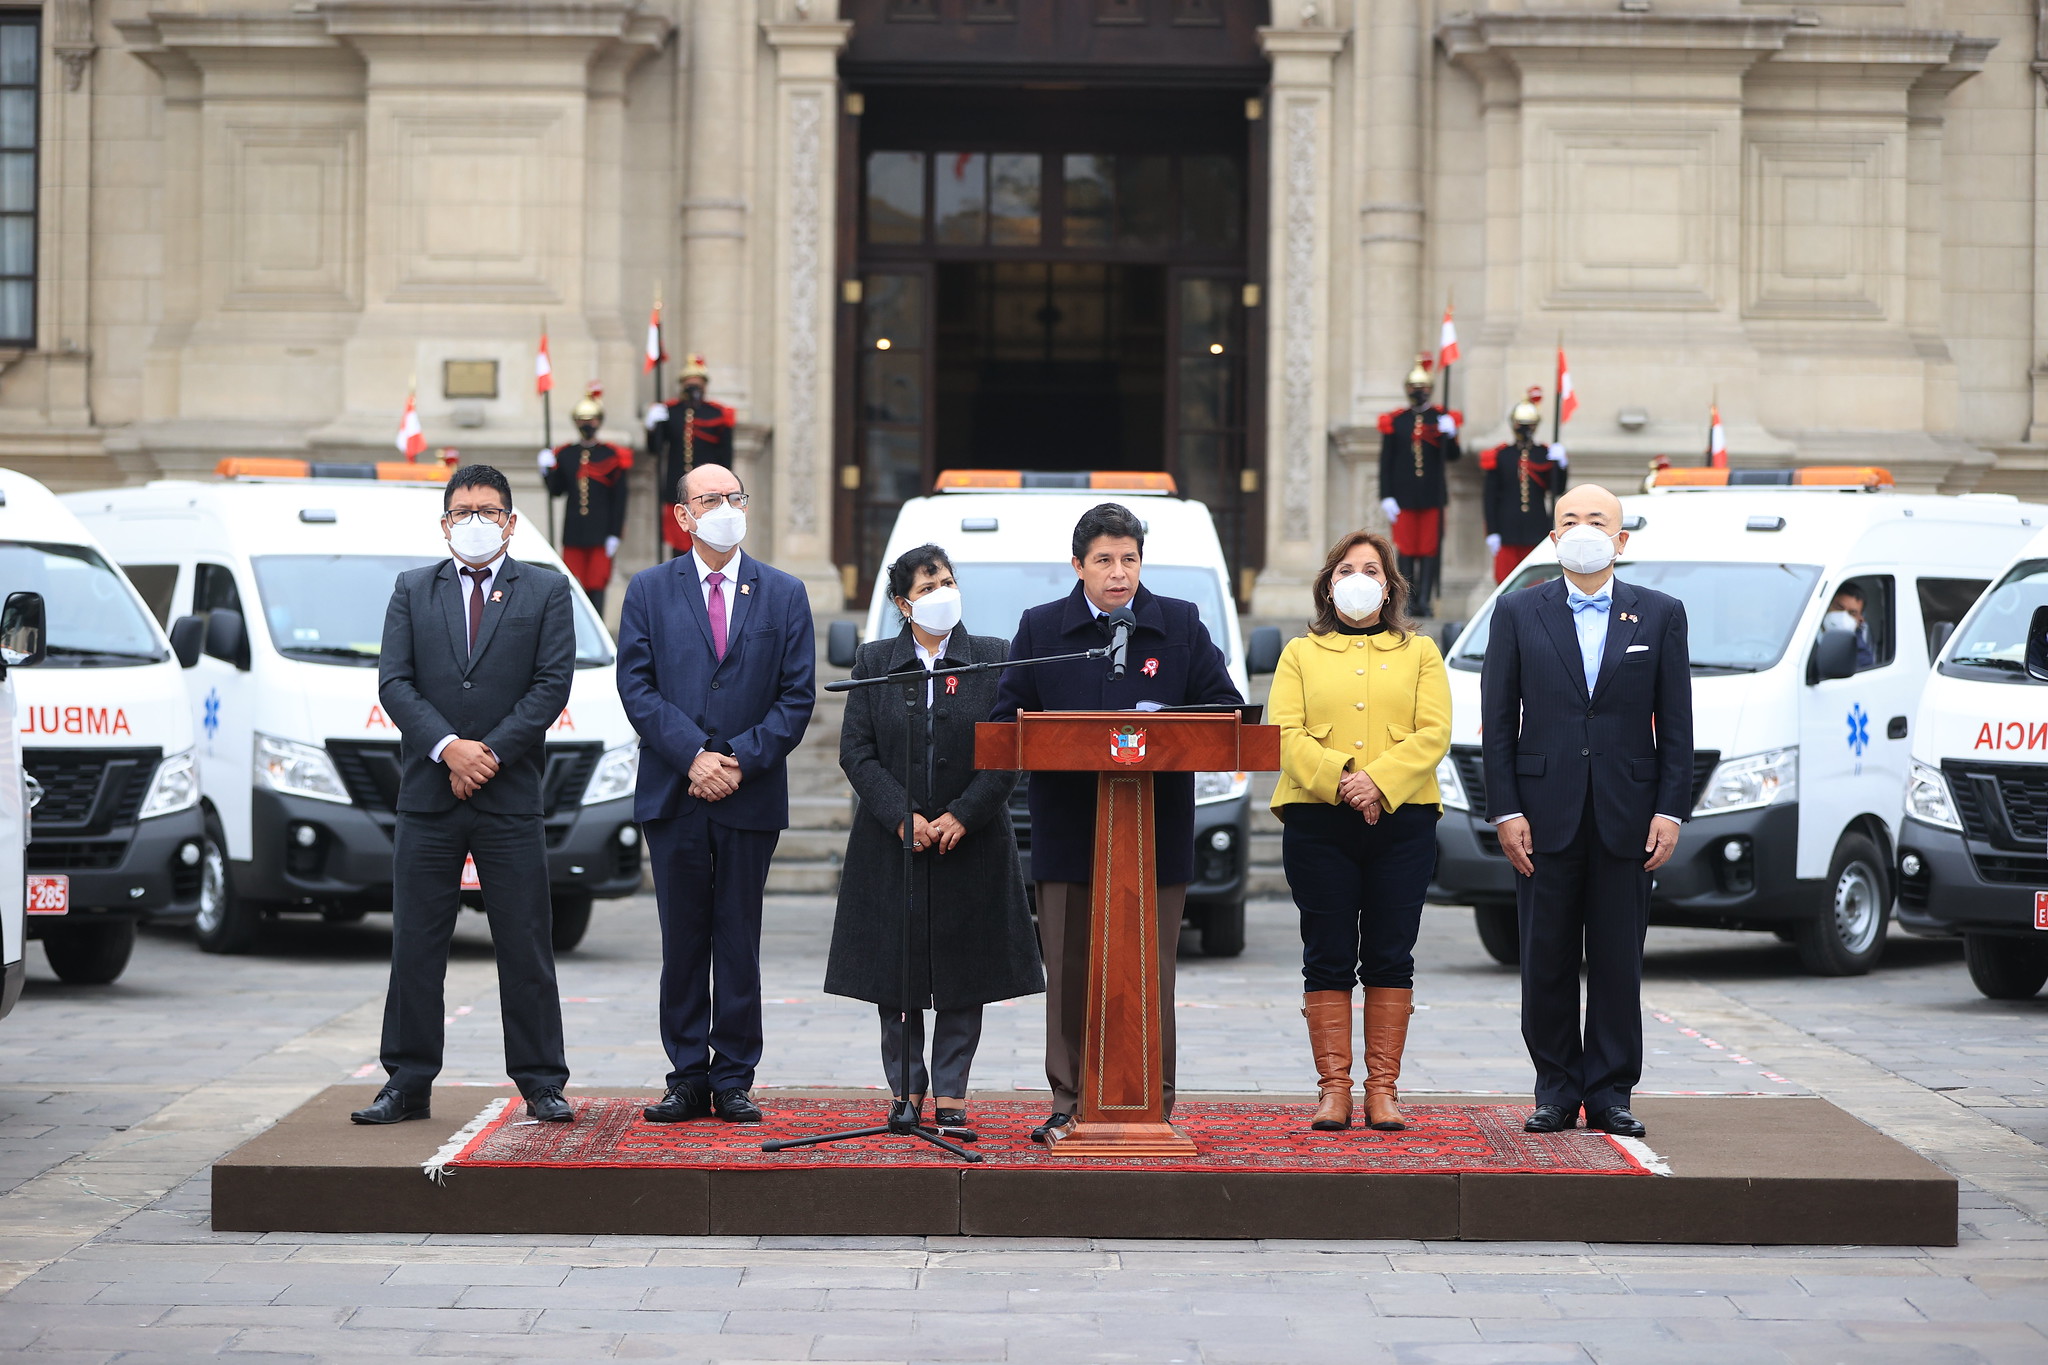 PERÚ: Presidente Castillo dispone que ambulancias donadas sean distribuidas en forma descentralizada y priorizando zonas que más lo necesitan